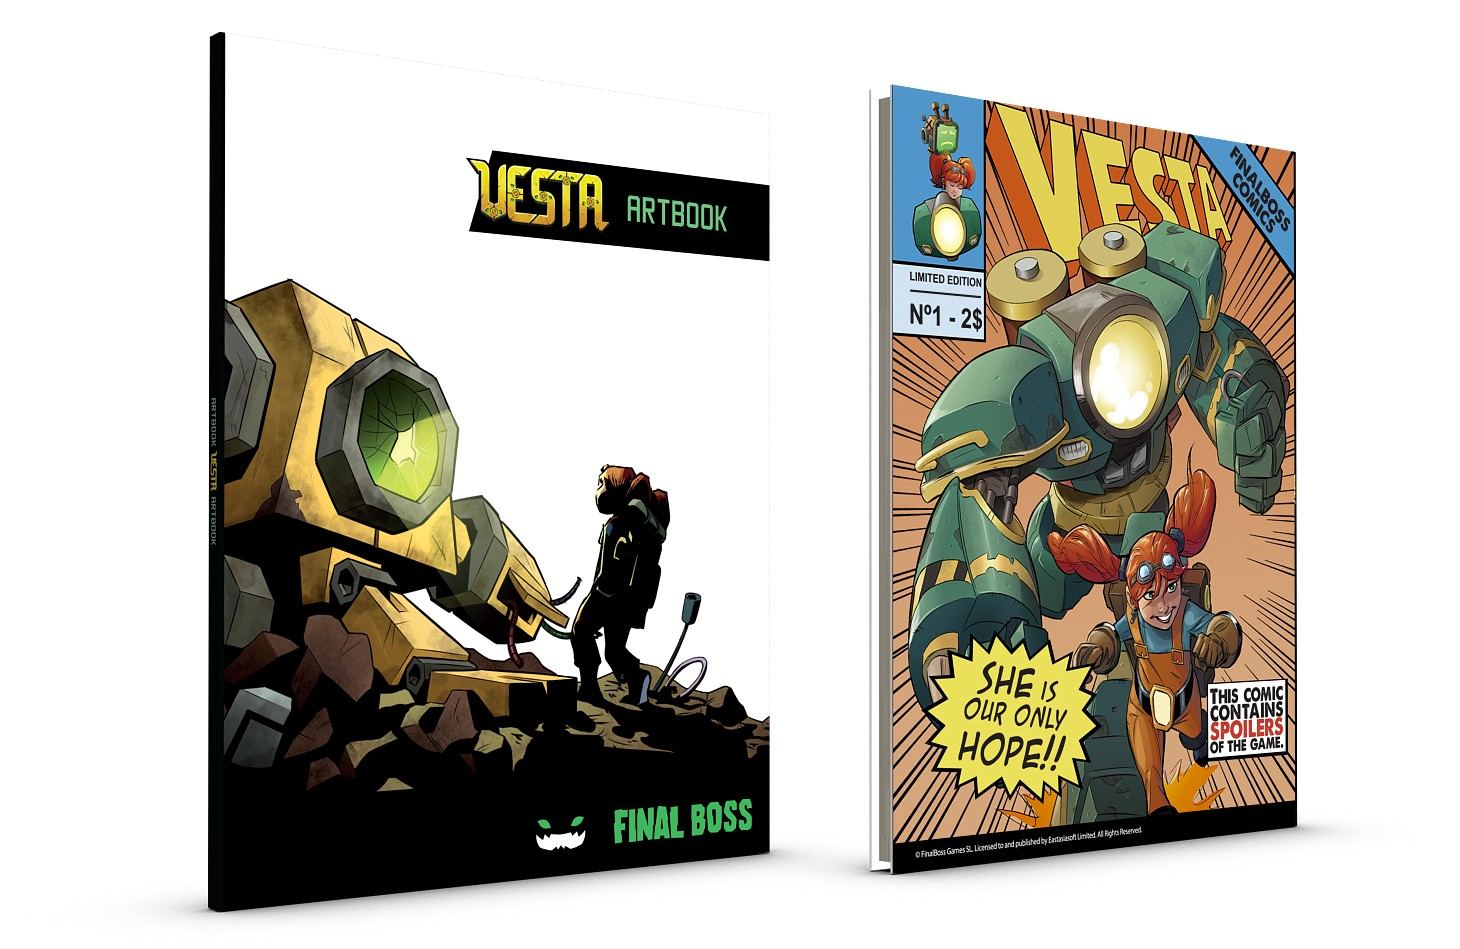 Vesta [Limited Edition]